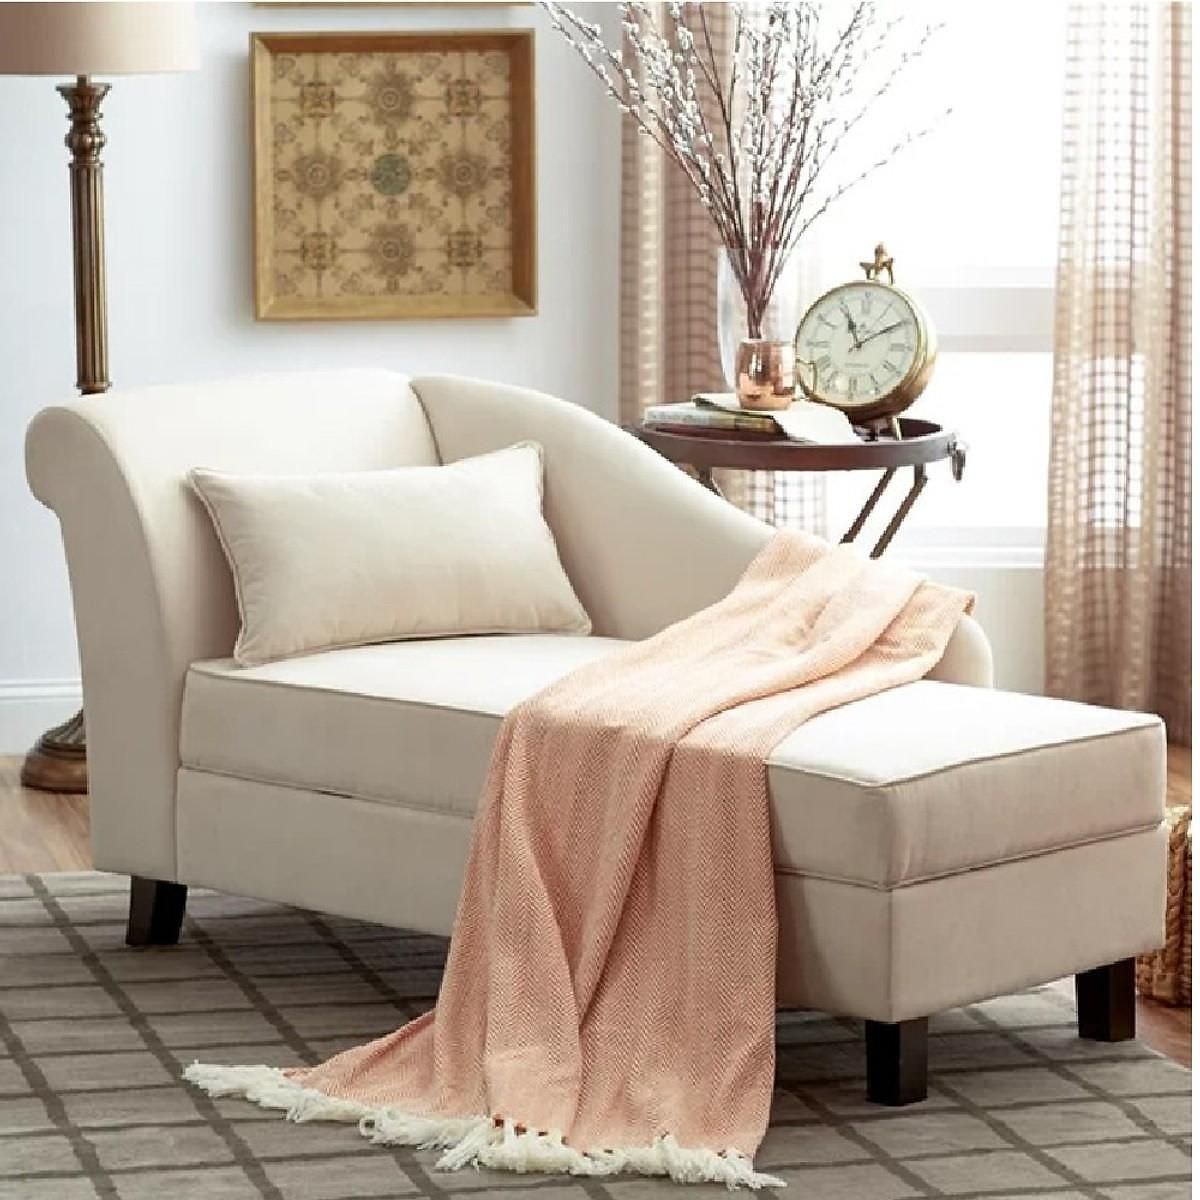 Ghế sofa thư giãn phòng ngủ với thiết kế đơn giản thoải mái